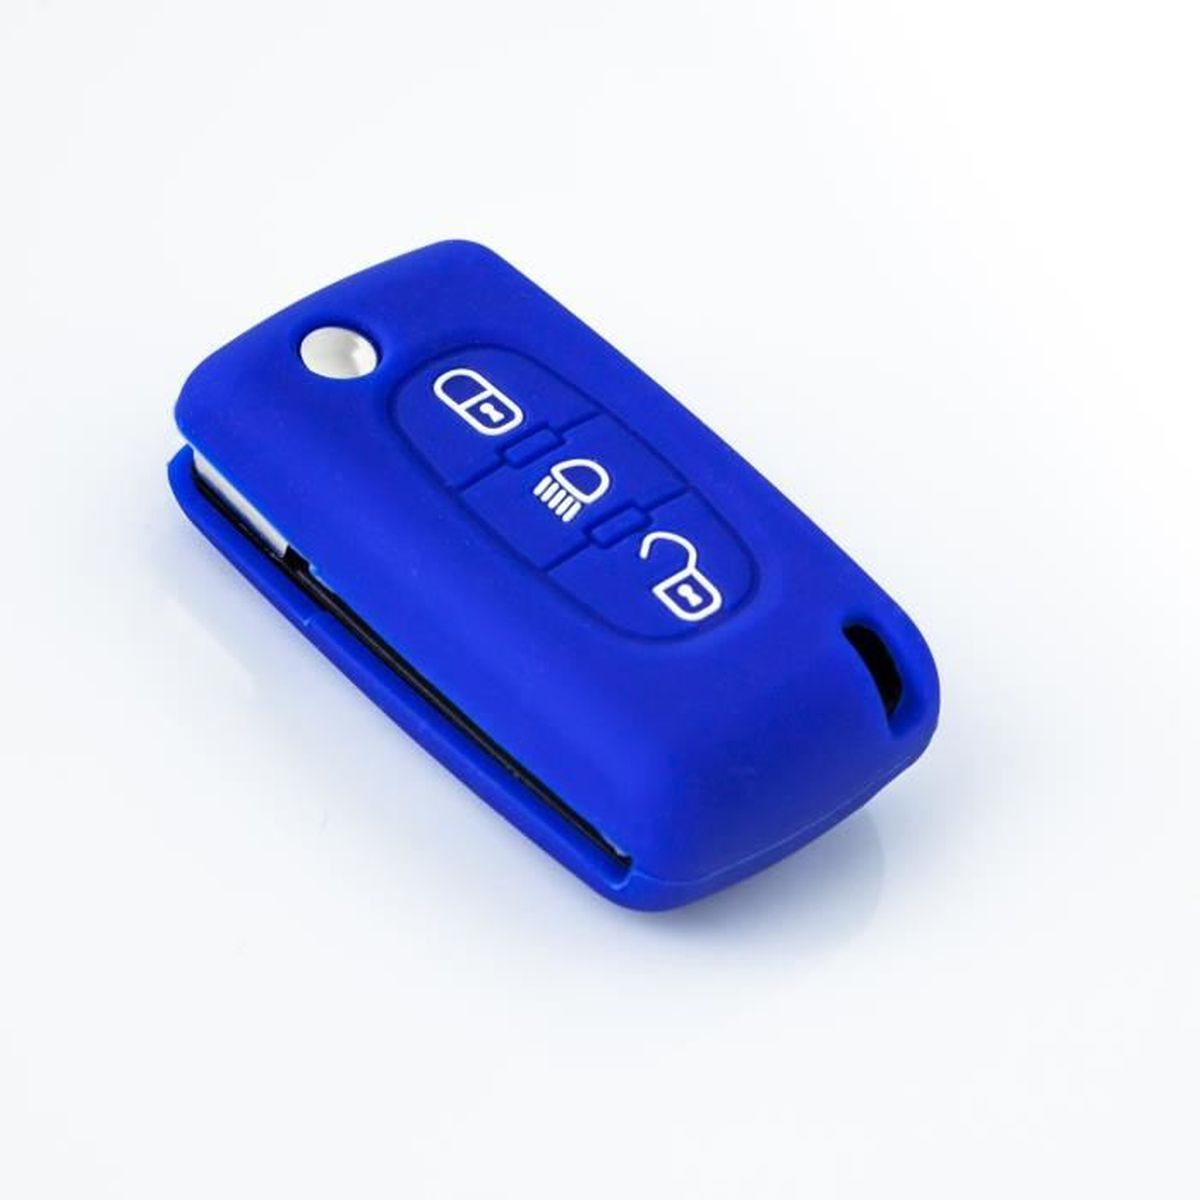 Voiture Clé Silicone Housse de Protection bleu pour Citroen Peugeot 4 touches